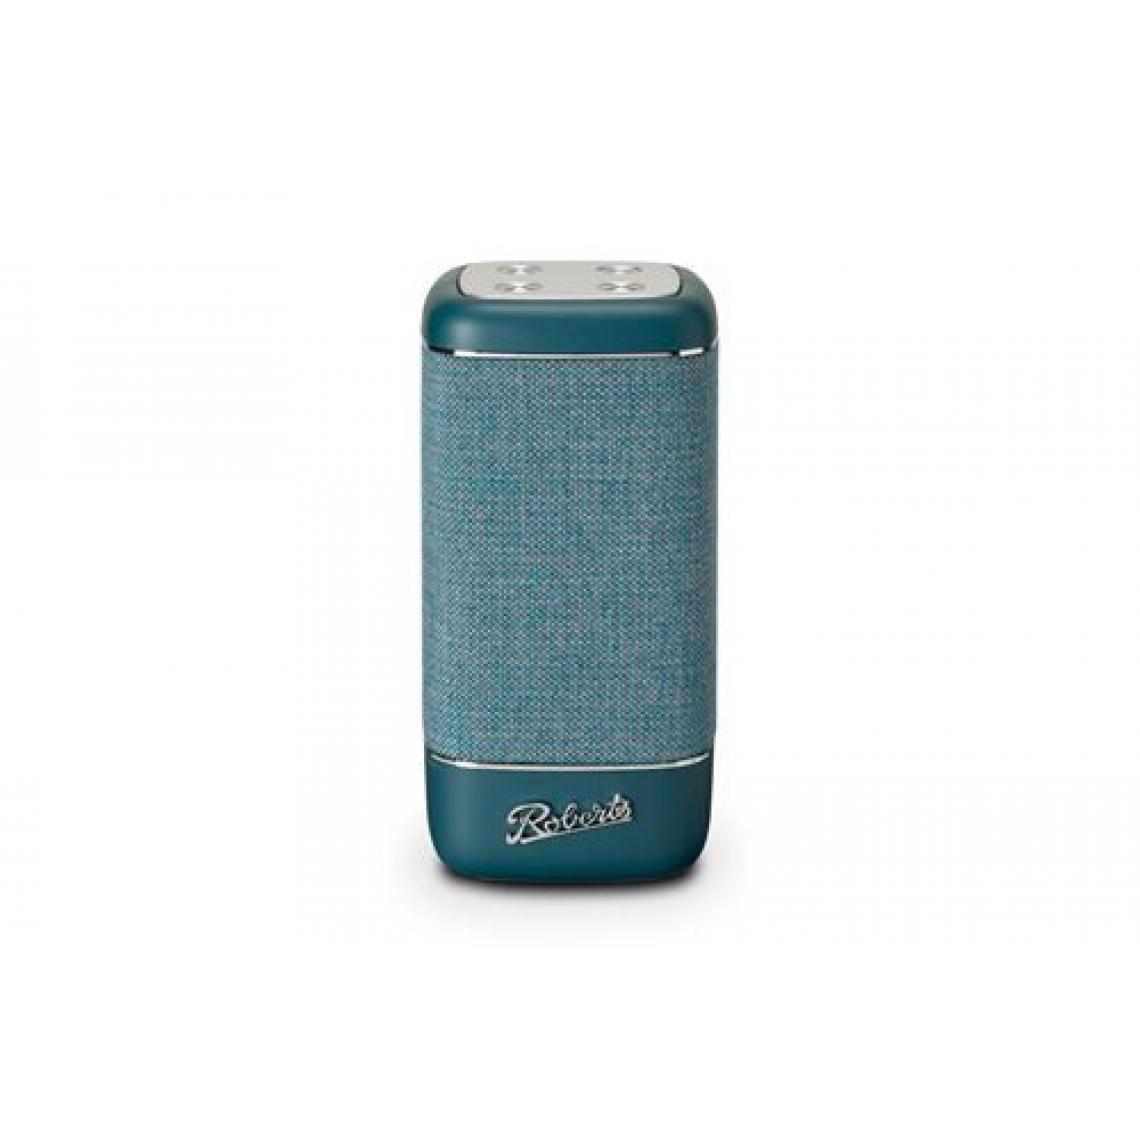 Roberts - Enceinte portable Bluetooth Roberts Beacon 325 Bleu sarcelle - Enceintes Hifi